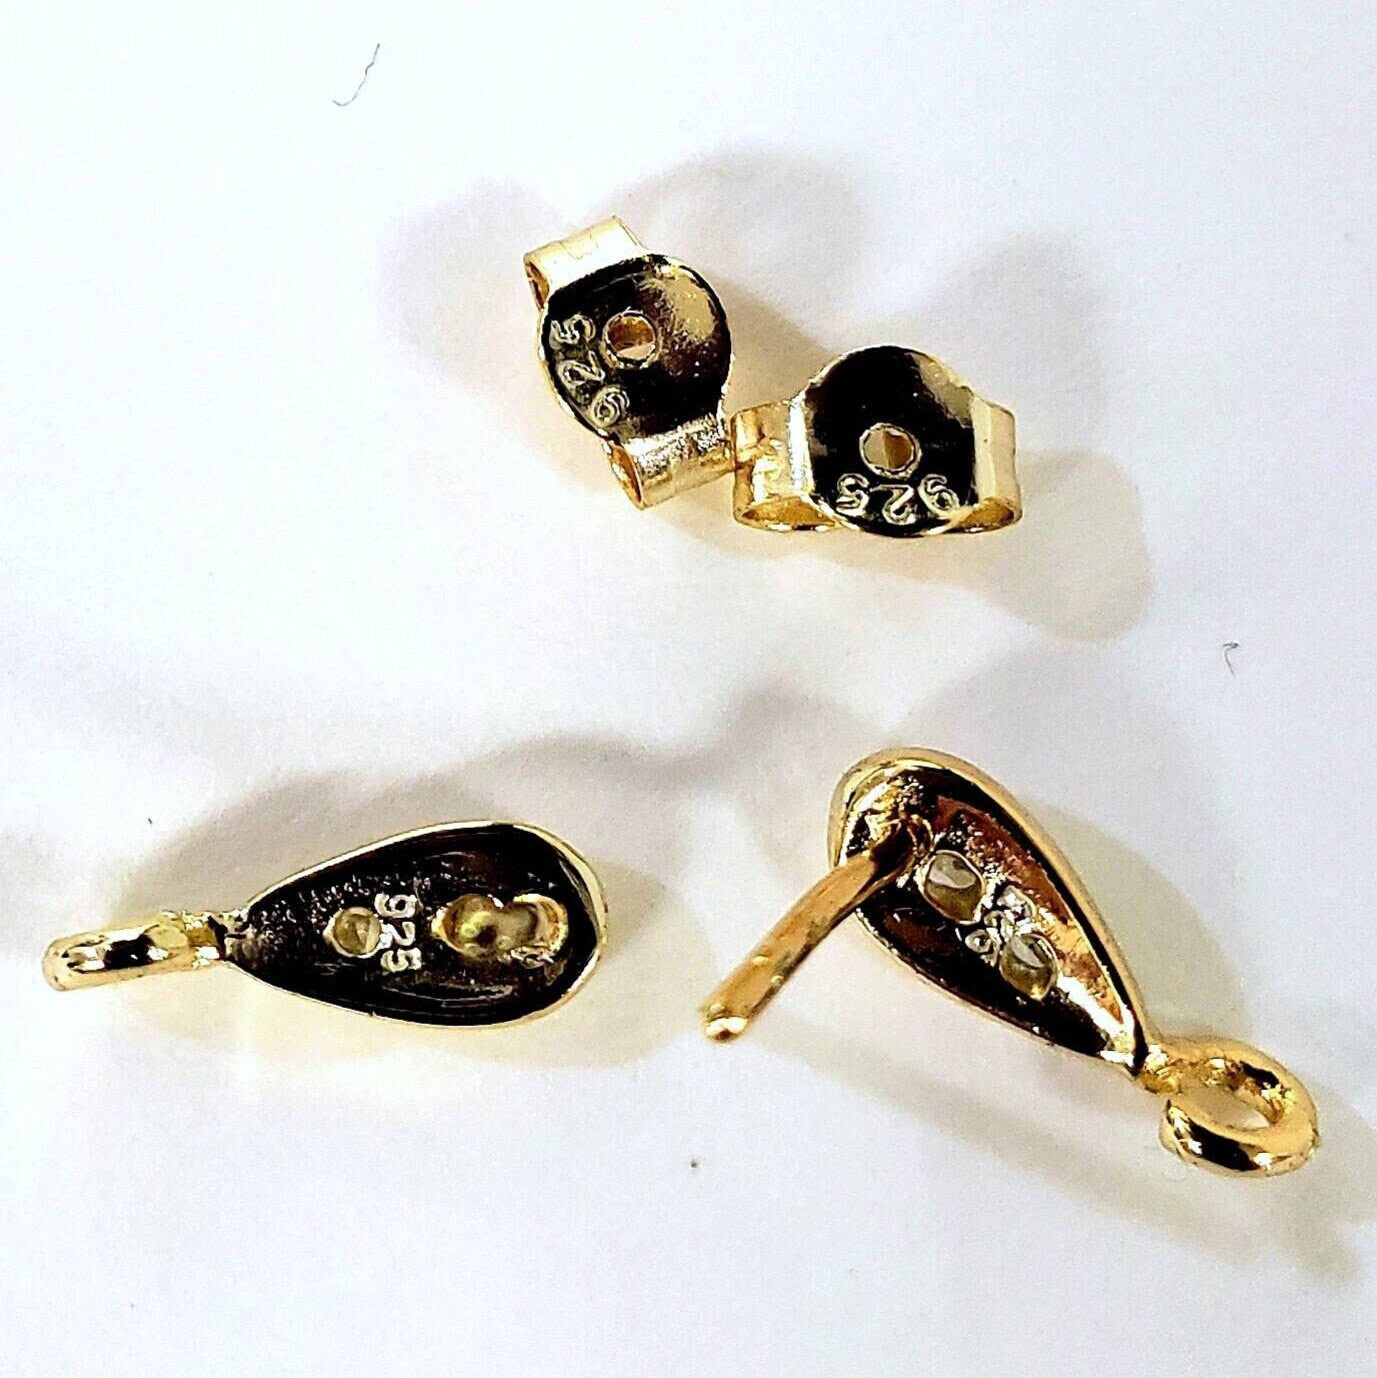 1 pair 18k gold vermeil 925 sterling silver cubic zirconia cz drop fancy earring post findings. 11mm long earrings making post .